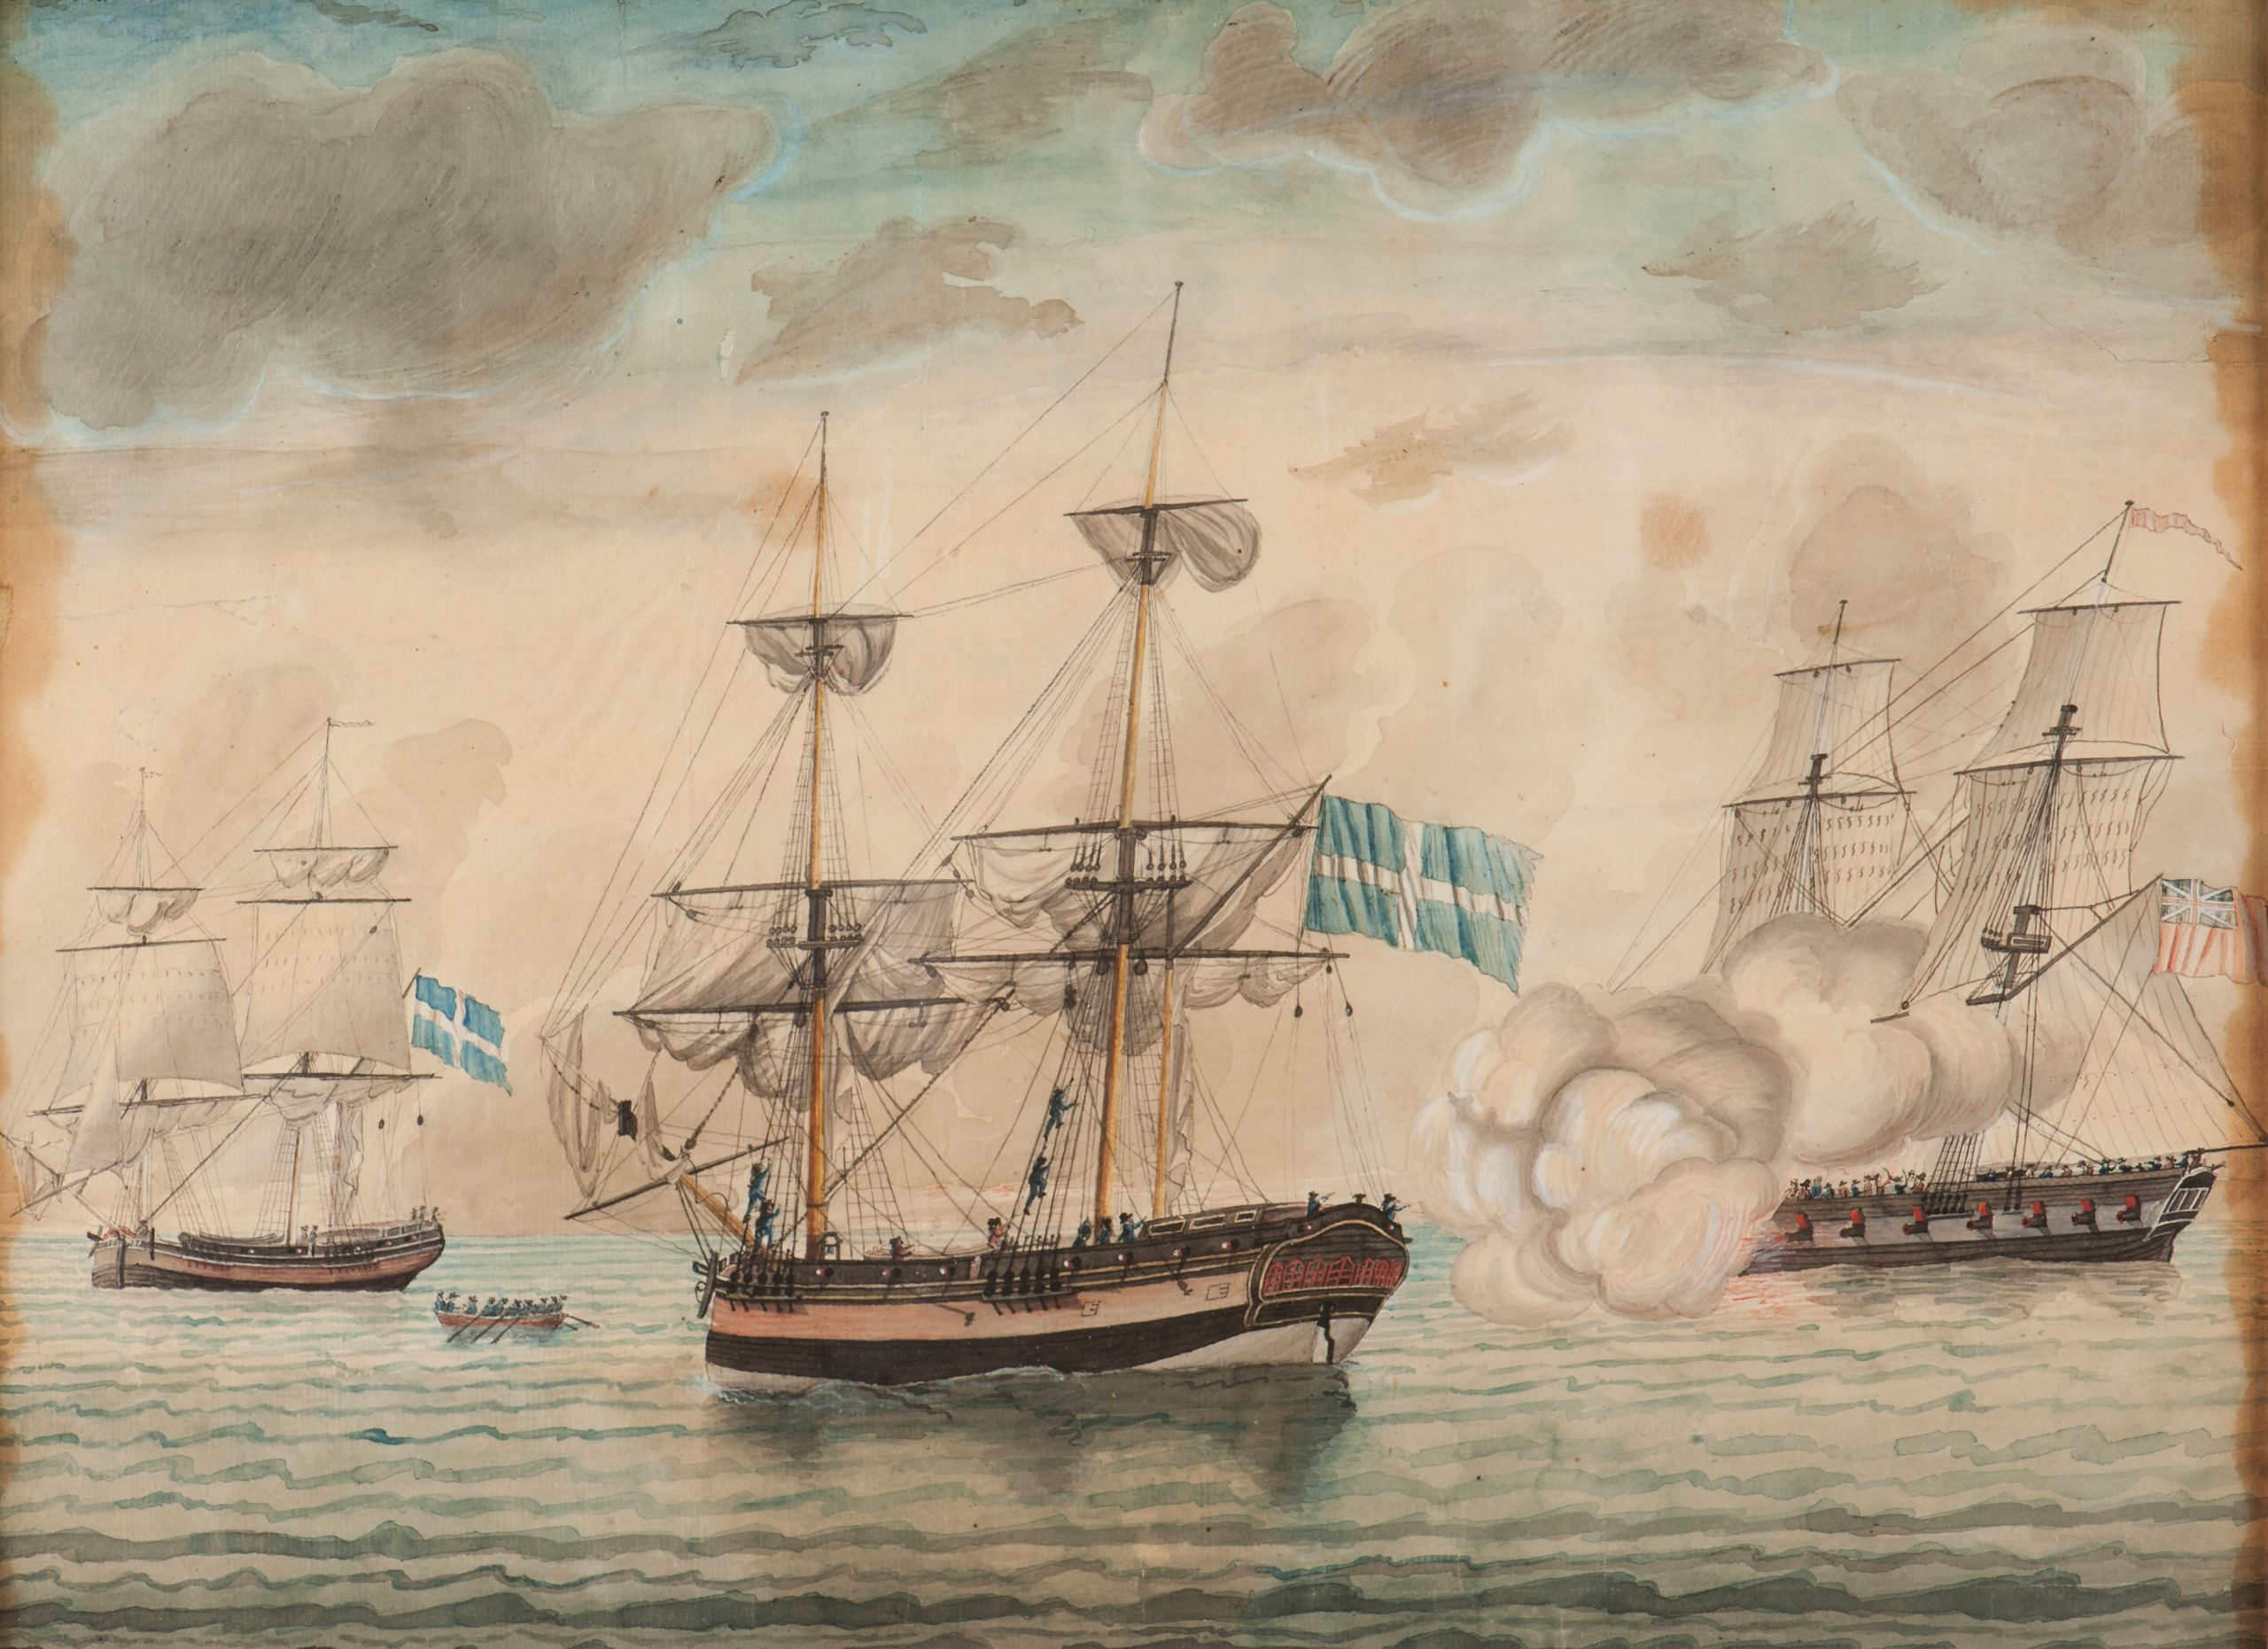 Målning.Två skepp under attack från ett tredje skepp